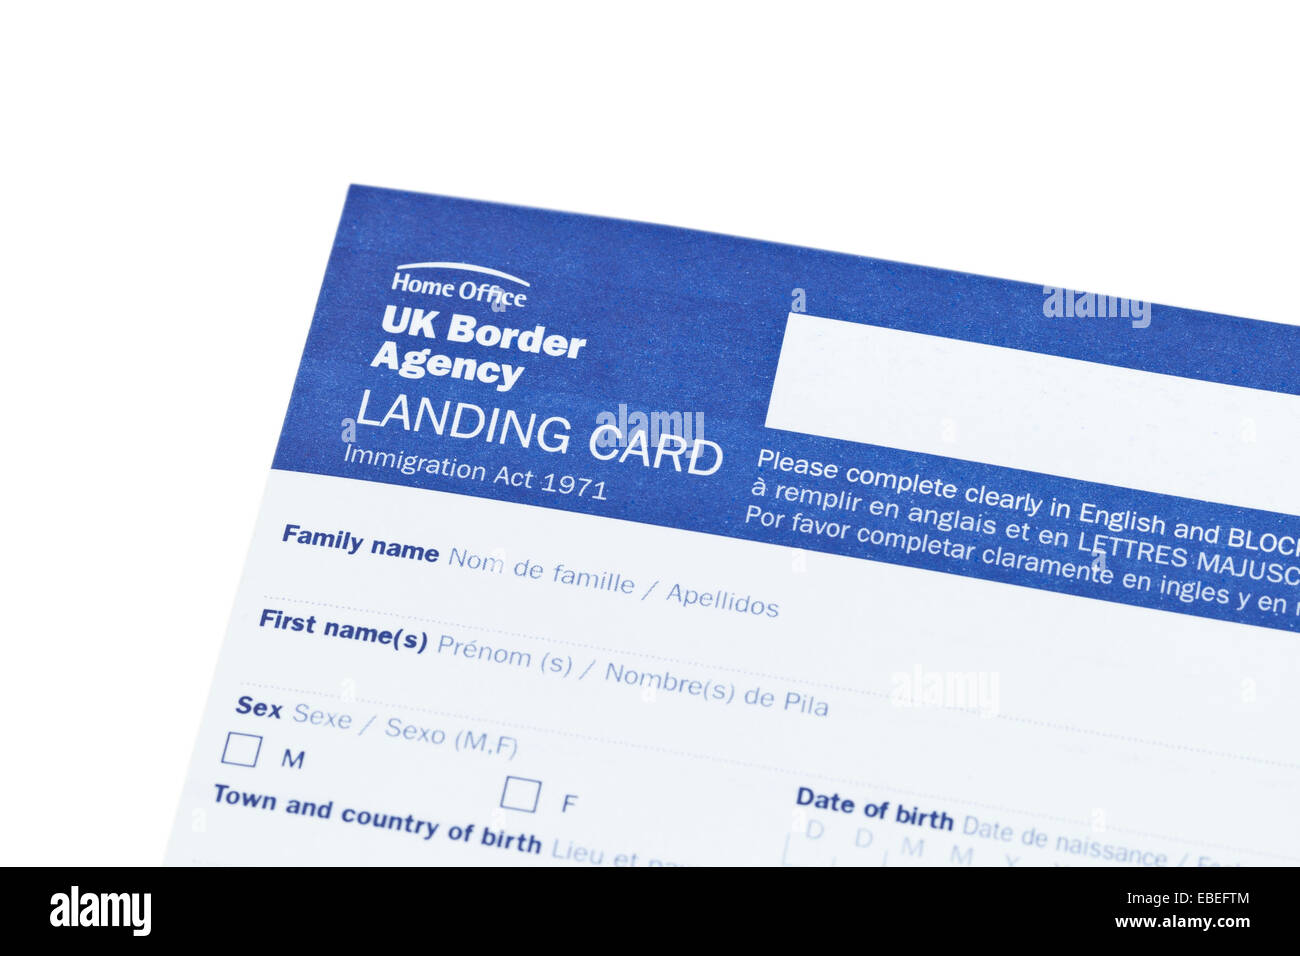 Uk landing card download free